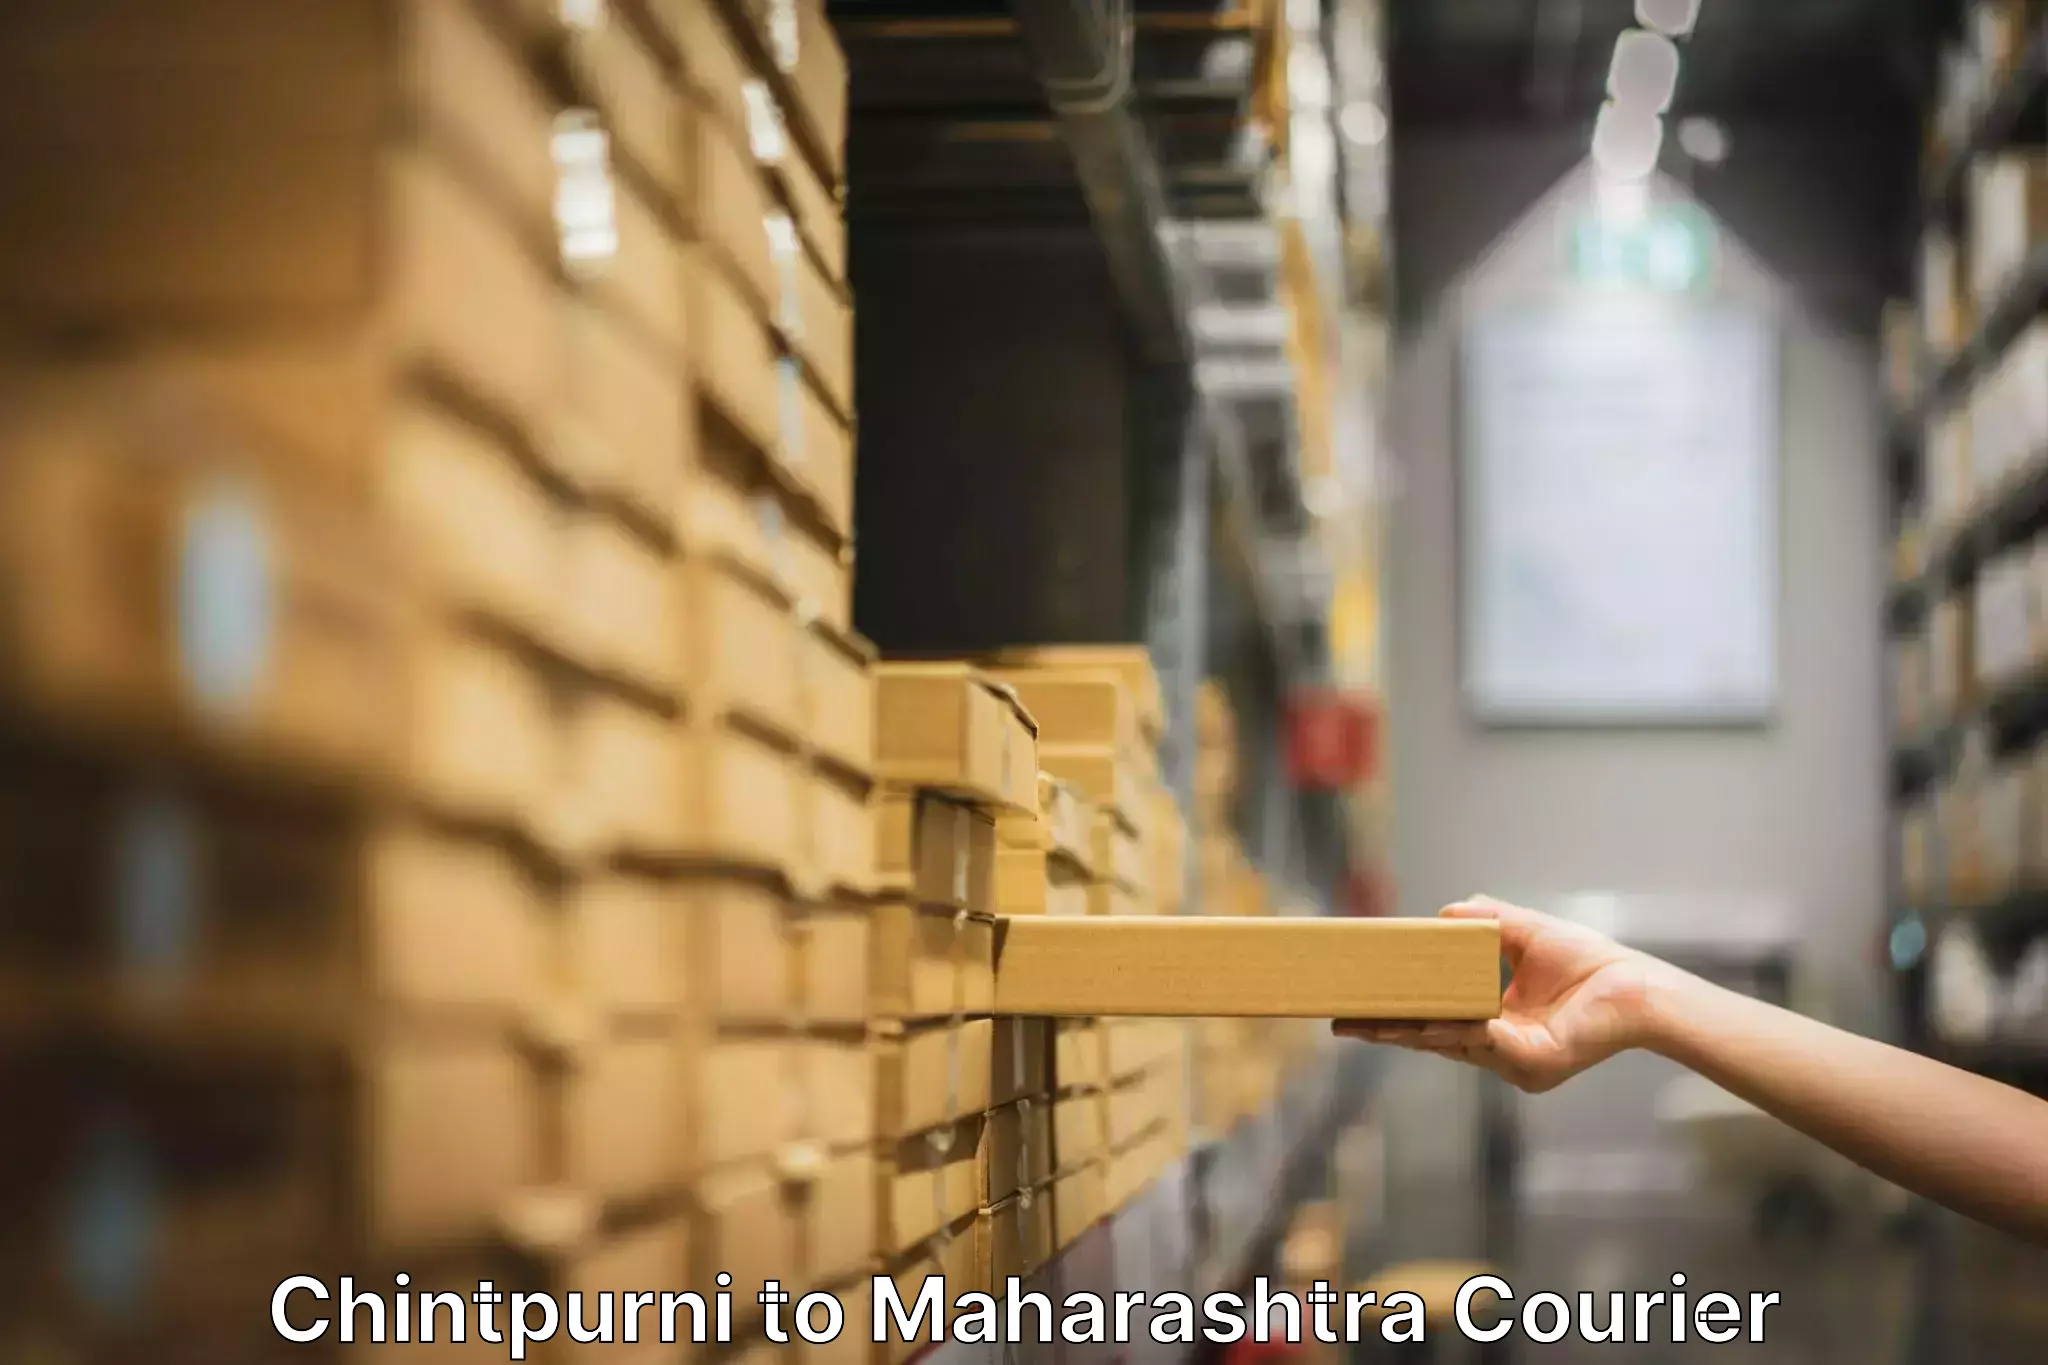 Furniture transport experts Chintpurni to Mumbai